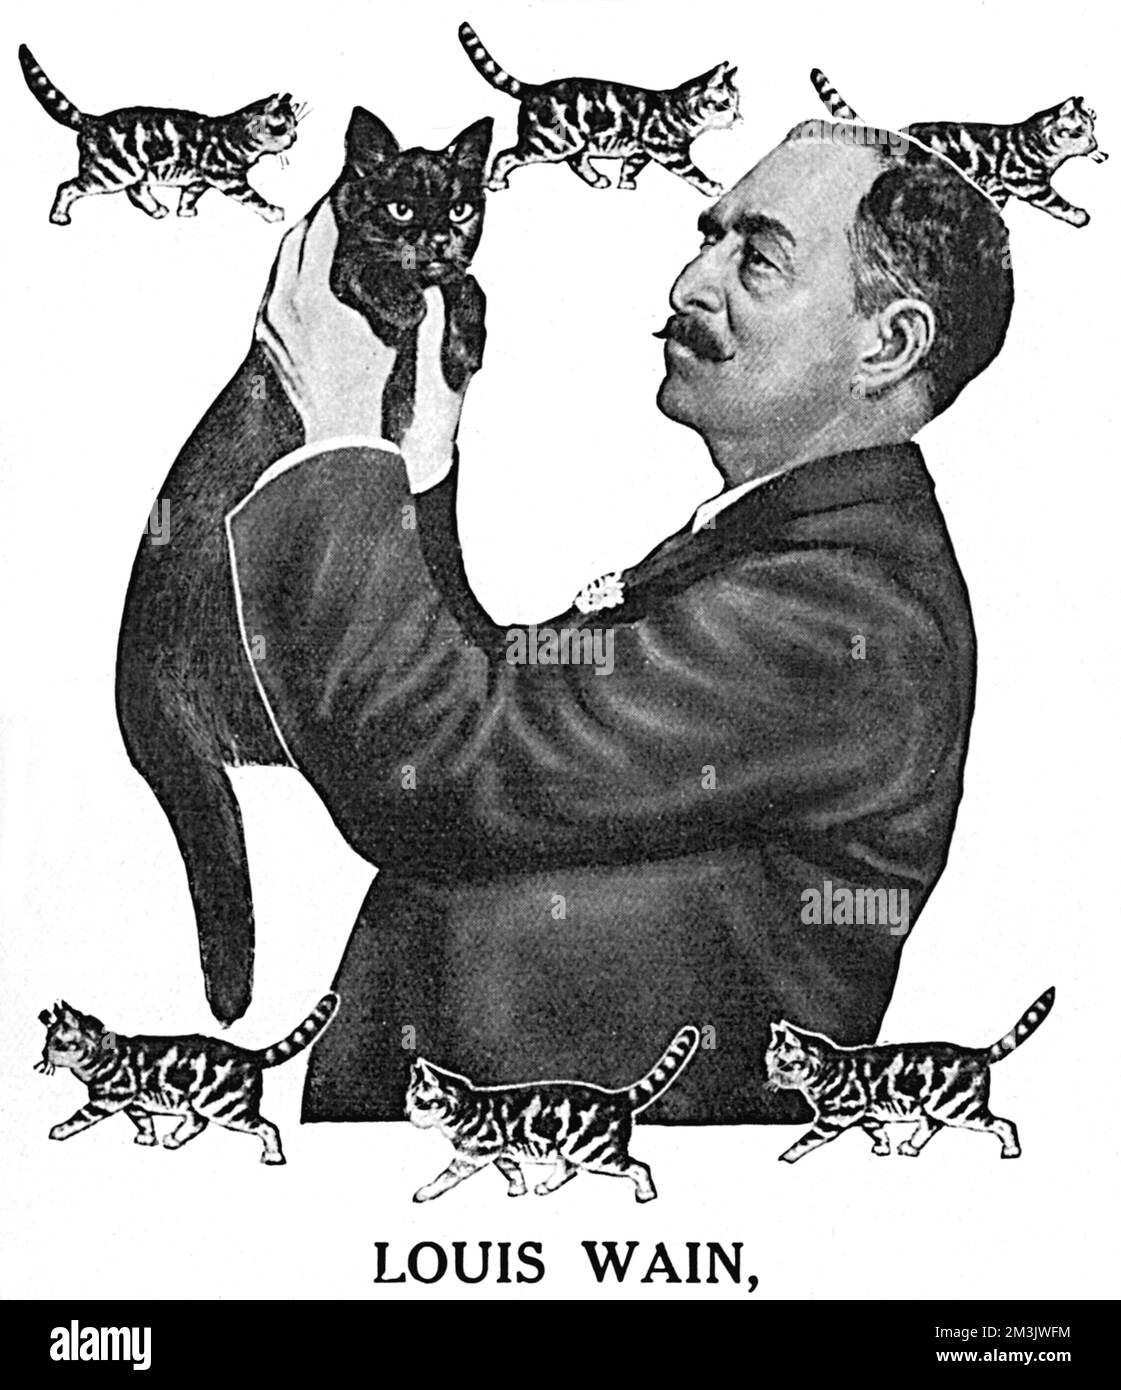 Louis Wain stammt aus einer Werbung für Phosferine, eine Tonic-Medizin, mit Louis Wain, dem berühmten Katzenkünstler. Wain sagt aus, dass das Tonikum „... ein guter Ansporn ist, den Appetit verbessert und sehr beeindruckende belebende Eigenschaften besitzt“. Wain war in der Lage, eine Vielzahl von Tieren zu zeichnen, bevor er den Ruhm erlangte, den er mit seinen Katzenkreationen erreichte. Leider wurde seine wachsende Besessenheit von Katzen zu Wahnsinn und er starb 1939 mittellos in einer psychiatrischen Anstalt. Stockfoto